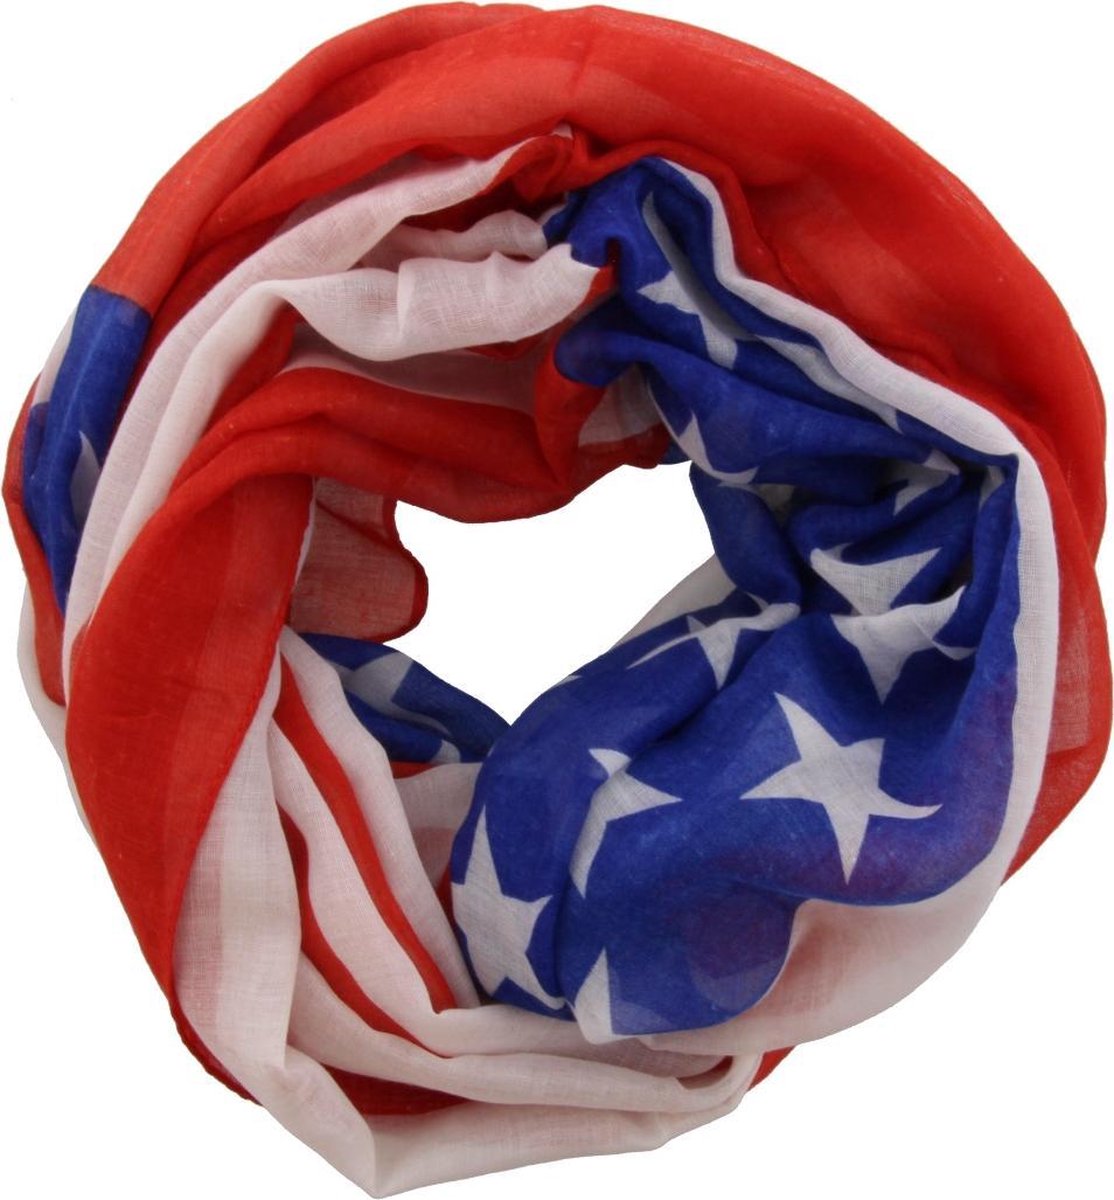 Alaska Regenachtig uitgehongerd Col shawl met de Amerikaanse vlag erop. De kleuren zijn rood, wit en blauw.  100% viscose | bol.com